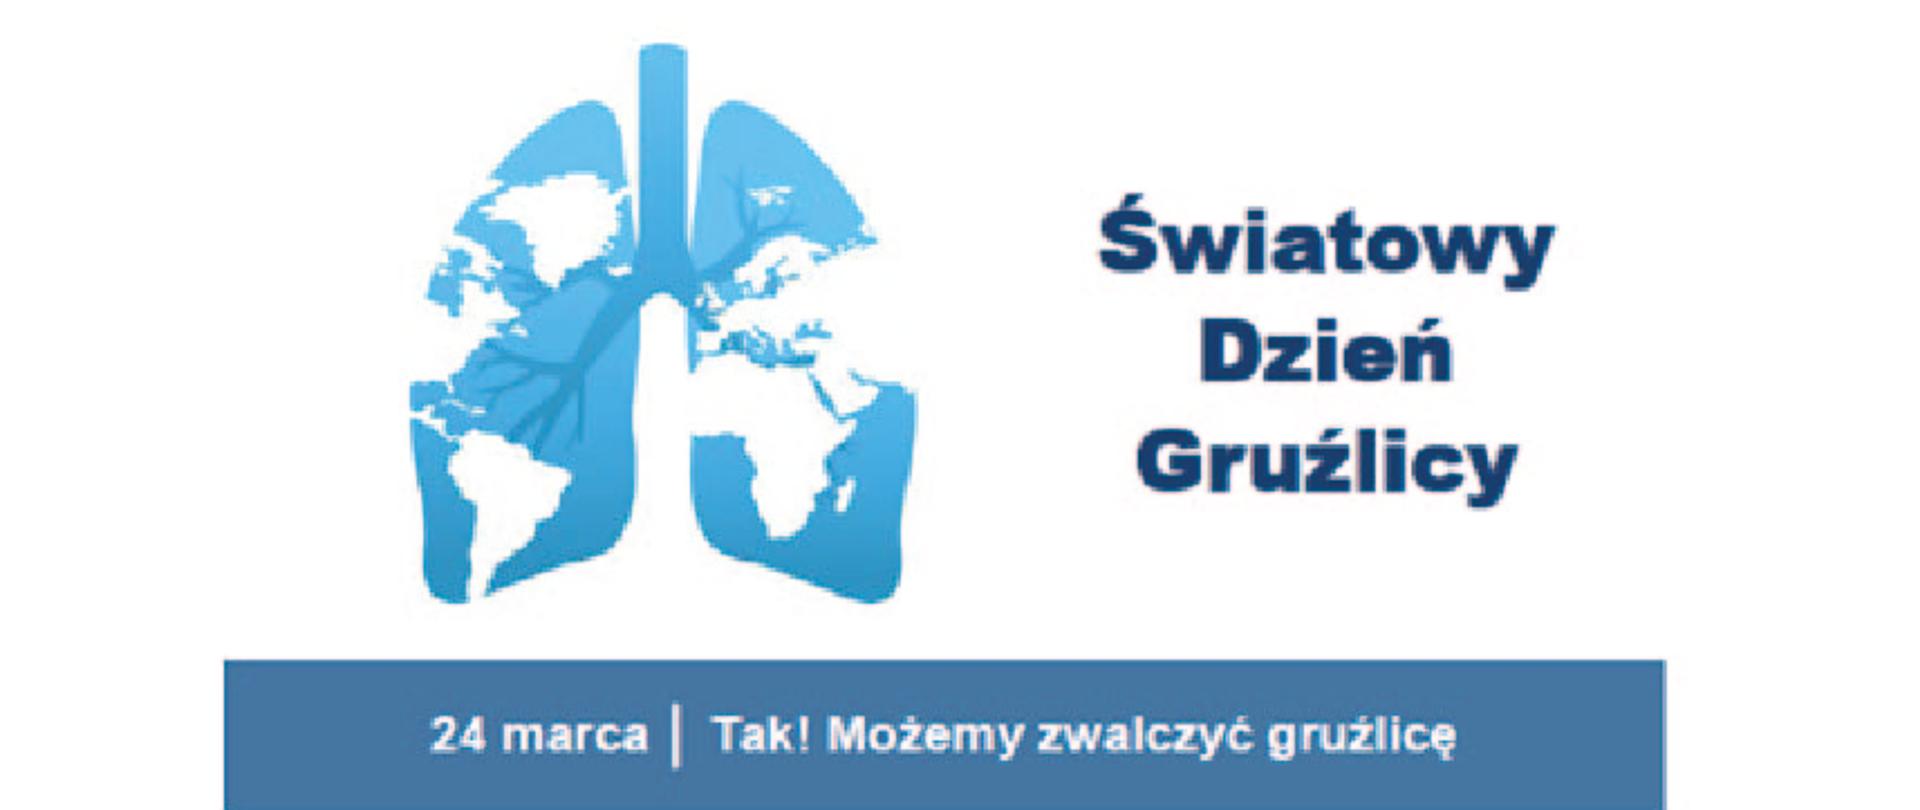 Obraz przedstawia niebieskie płuca, na których zostały umieszczone białe kontury kontynentów. po prawej stronie znajduje się napis "Światowy Dzień Gruźlicy. Na dole na niebieskim pasku jest napis "24 marca - Tak! Możemy zwalczyć gruźlicę